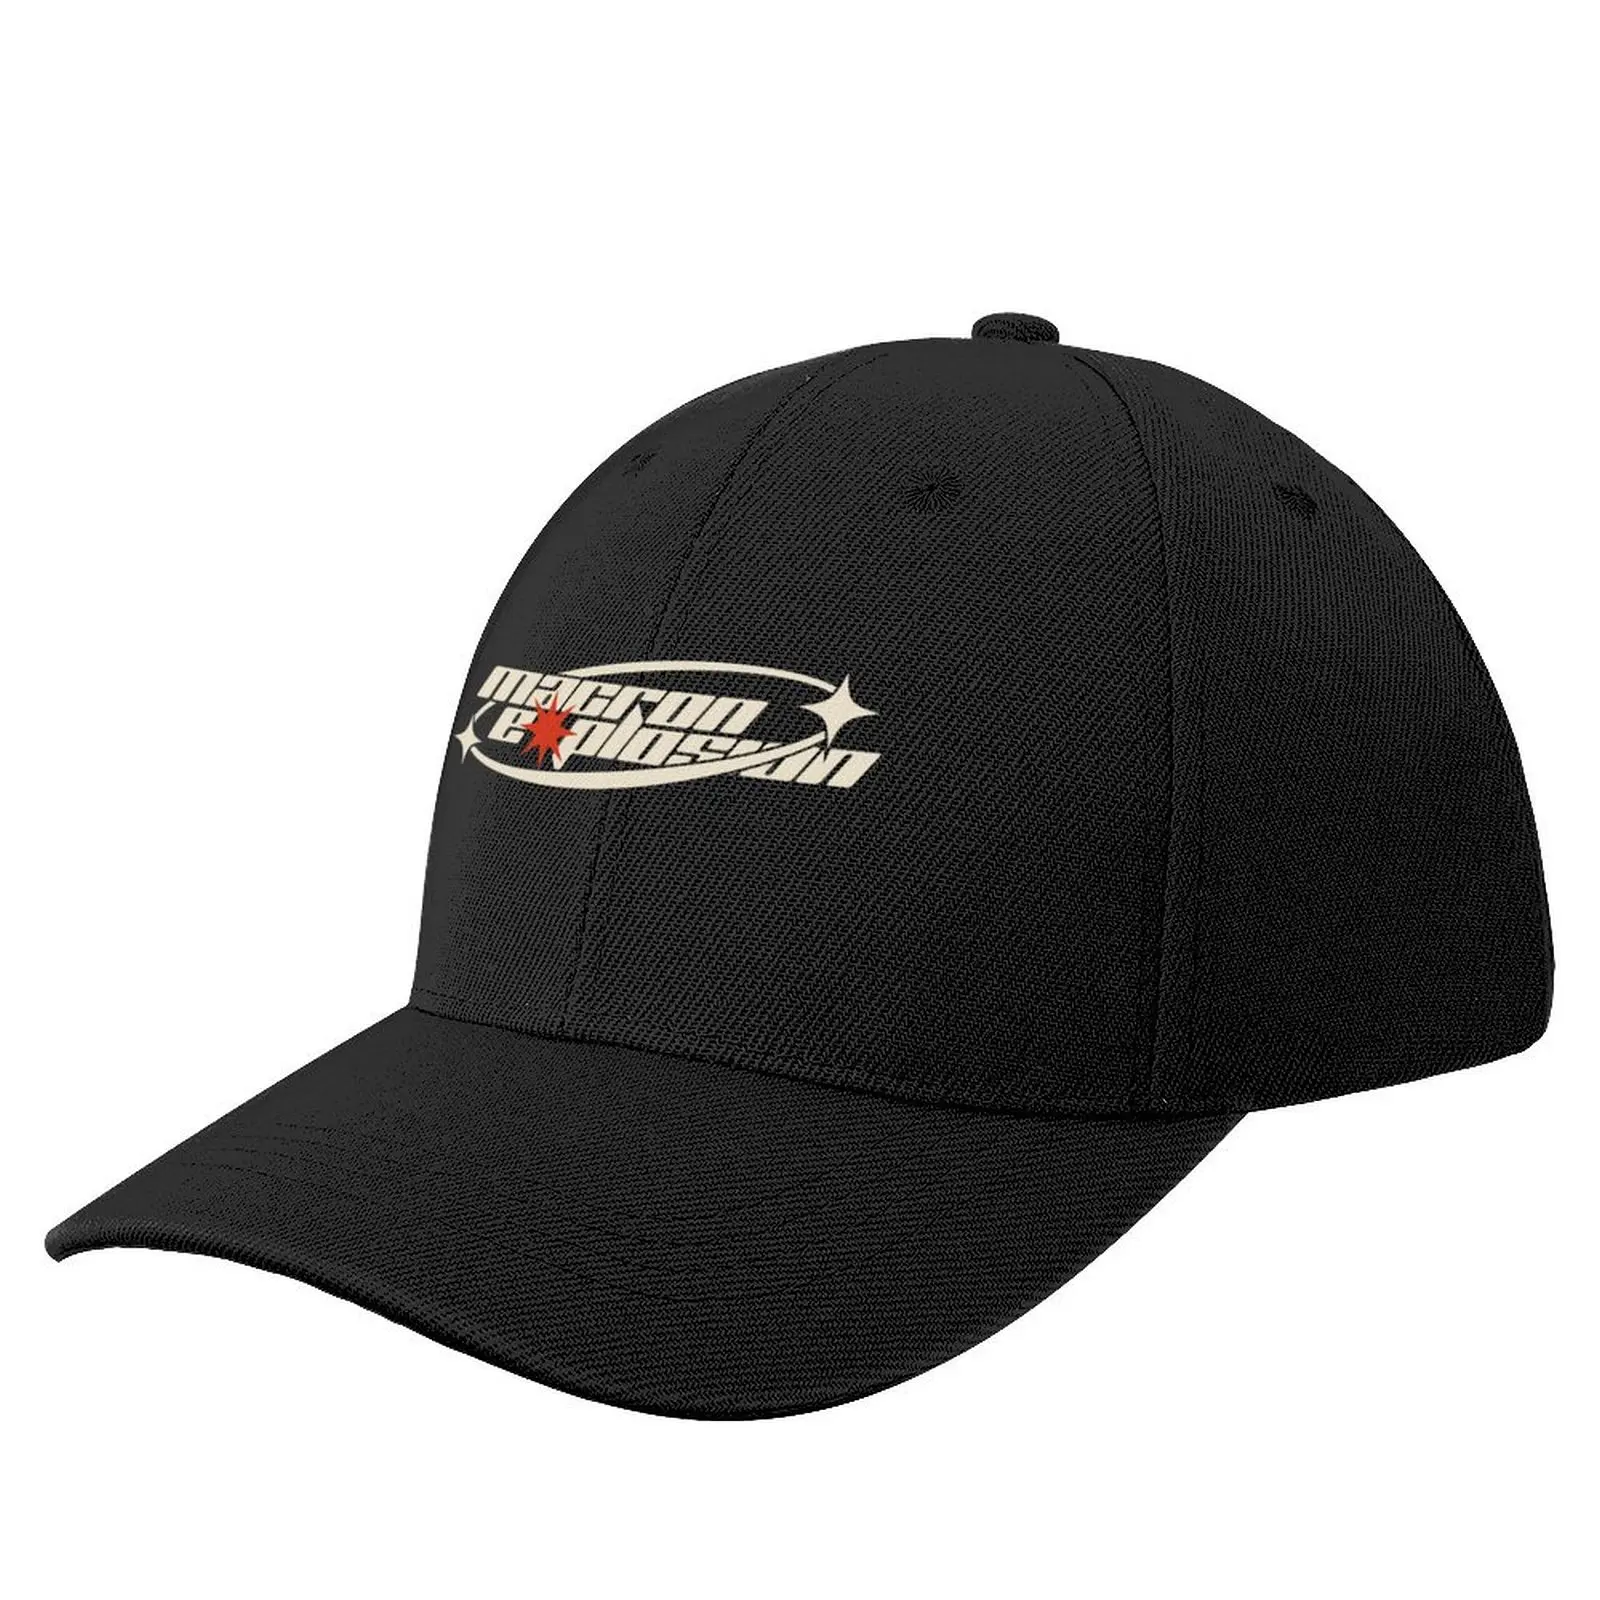 

macr*n e*plosion white boom Baseball Cap Wild Ball Hat New In Hat Sun Hat For Children Women's Beach Men's